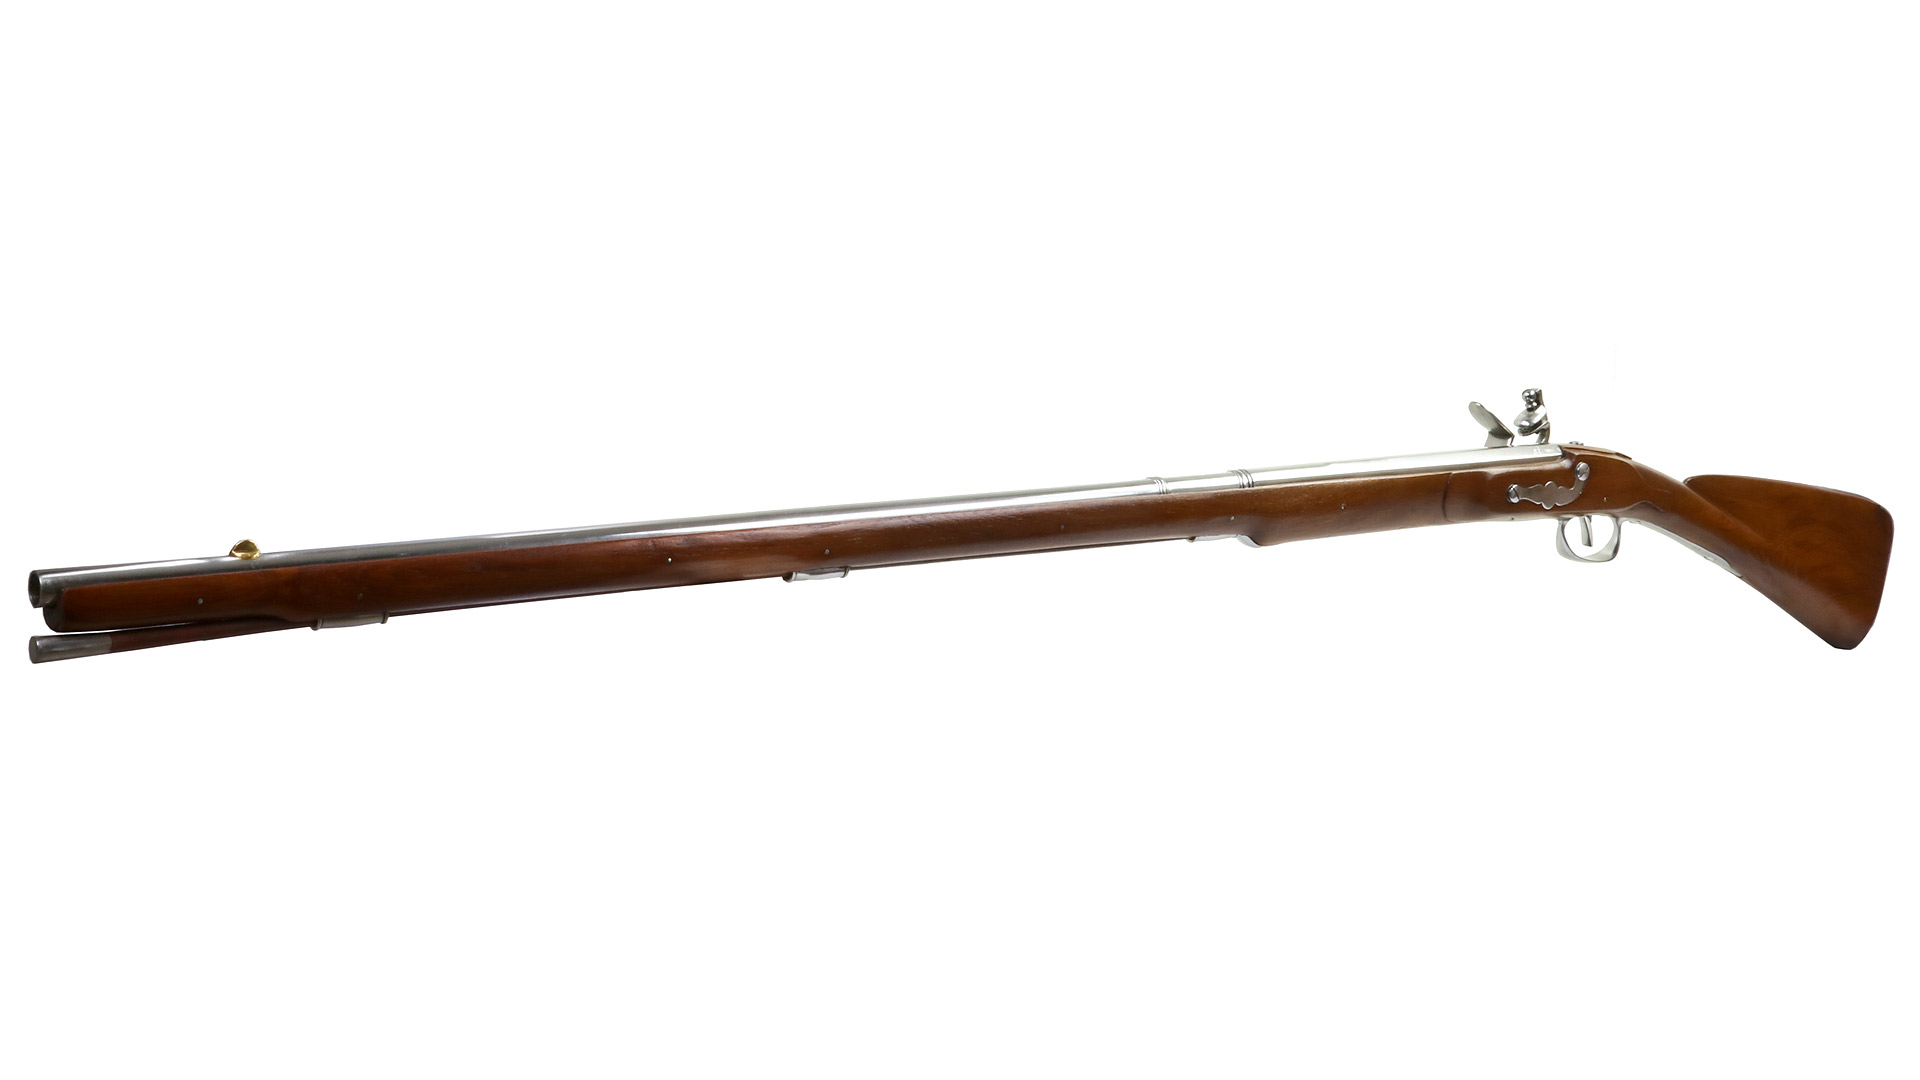 Vorderlader Steinschlossgewehr French Tulle Musket, Kaliber .63 bzw. 16 mm (P18)